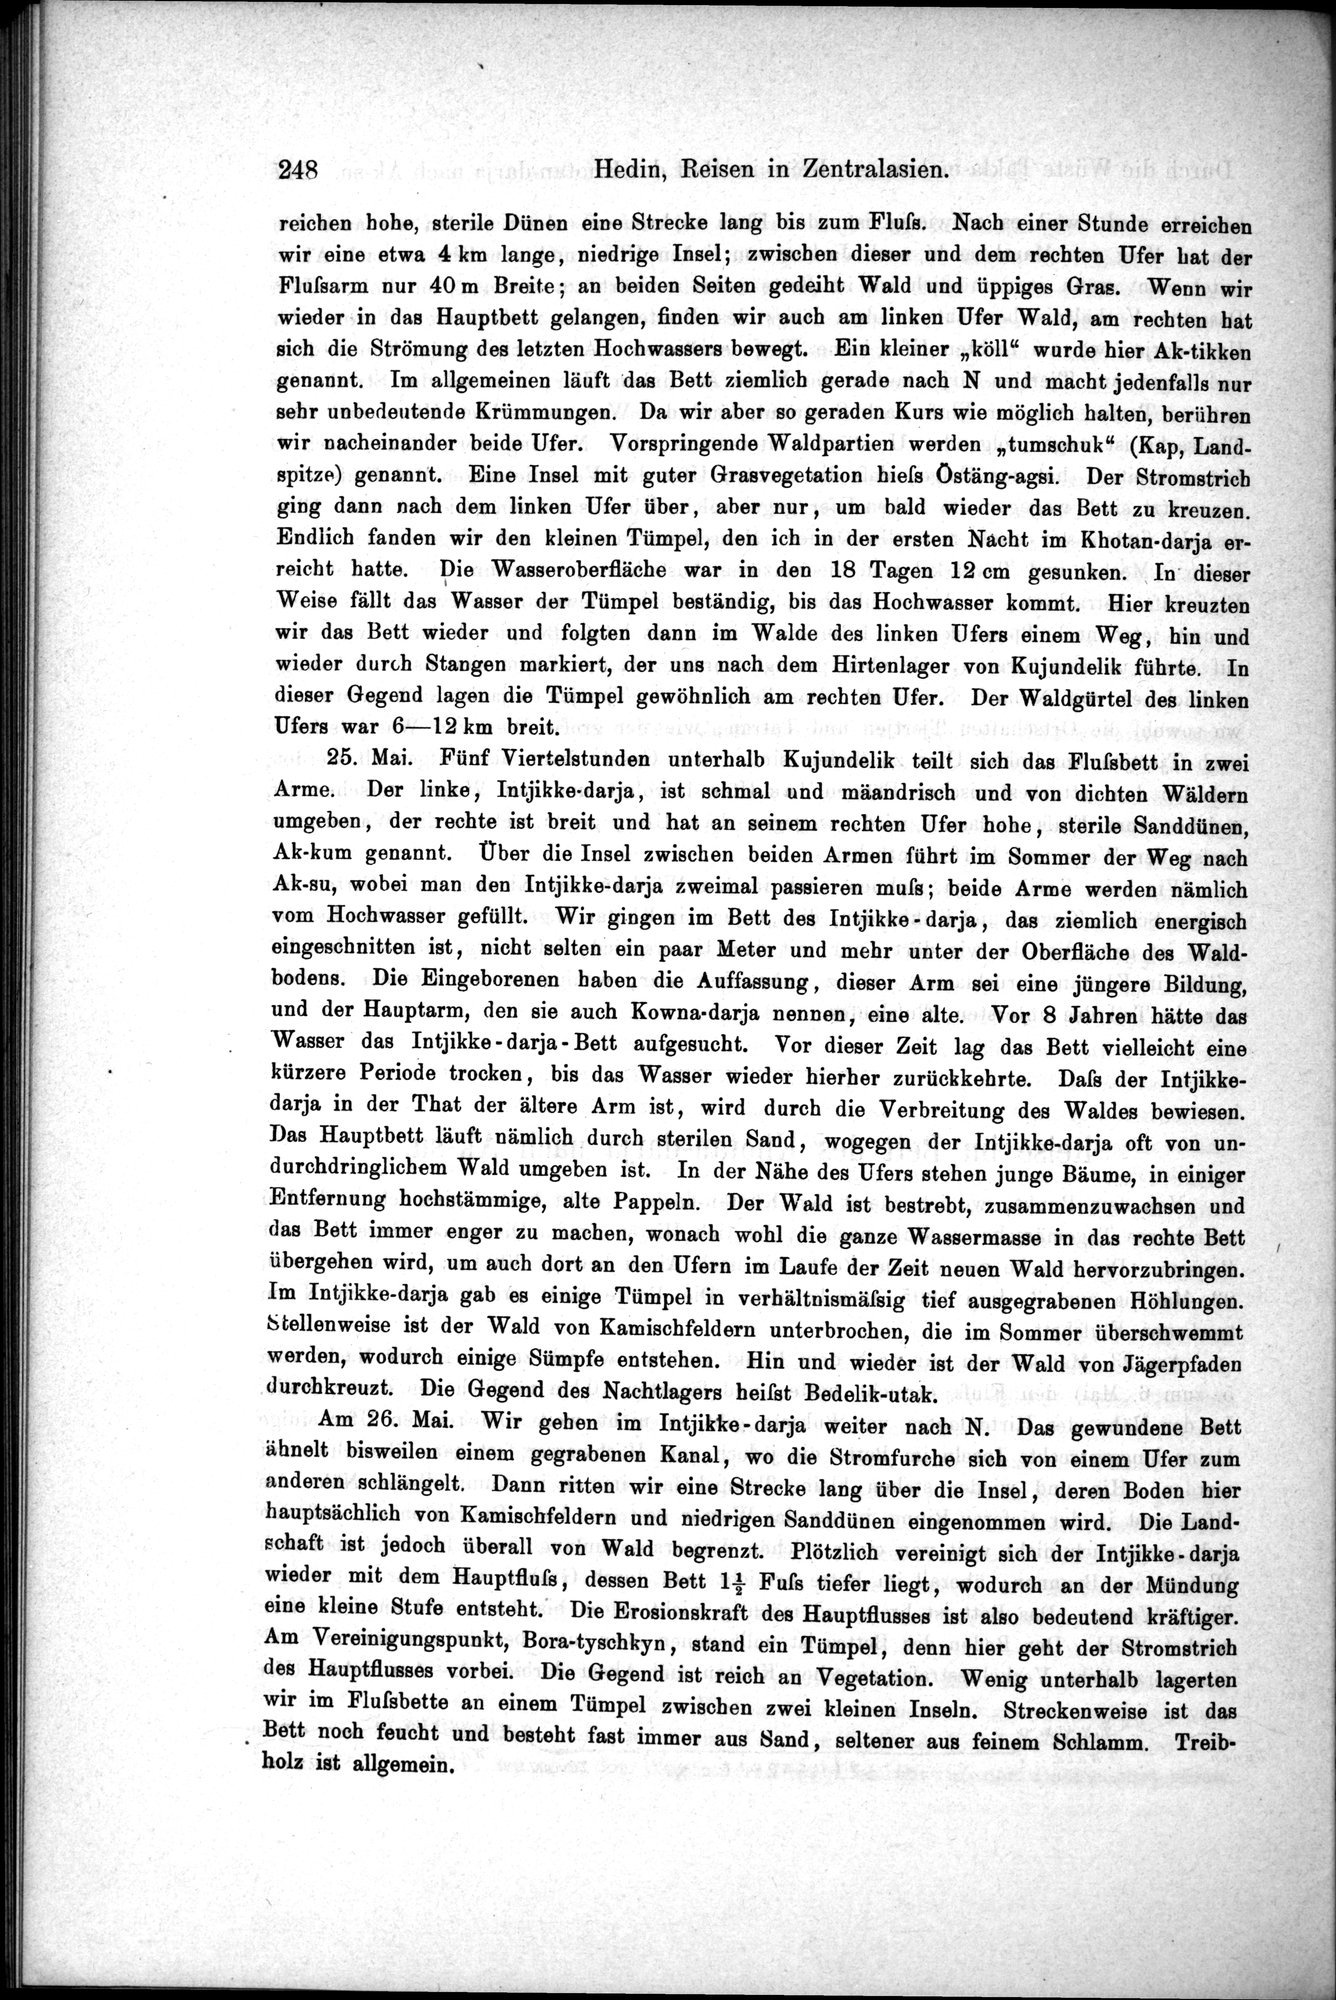 Die Geographische-Wissenschaftlichen Ergebnisse meiner Reisen in Zentralasien, 1894-1897 : vol.1 / Page 260 (Grayscale High Resolution Image)